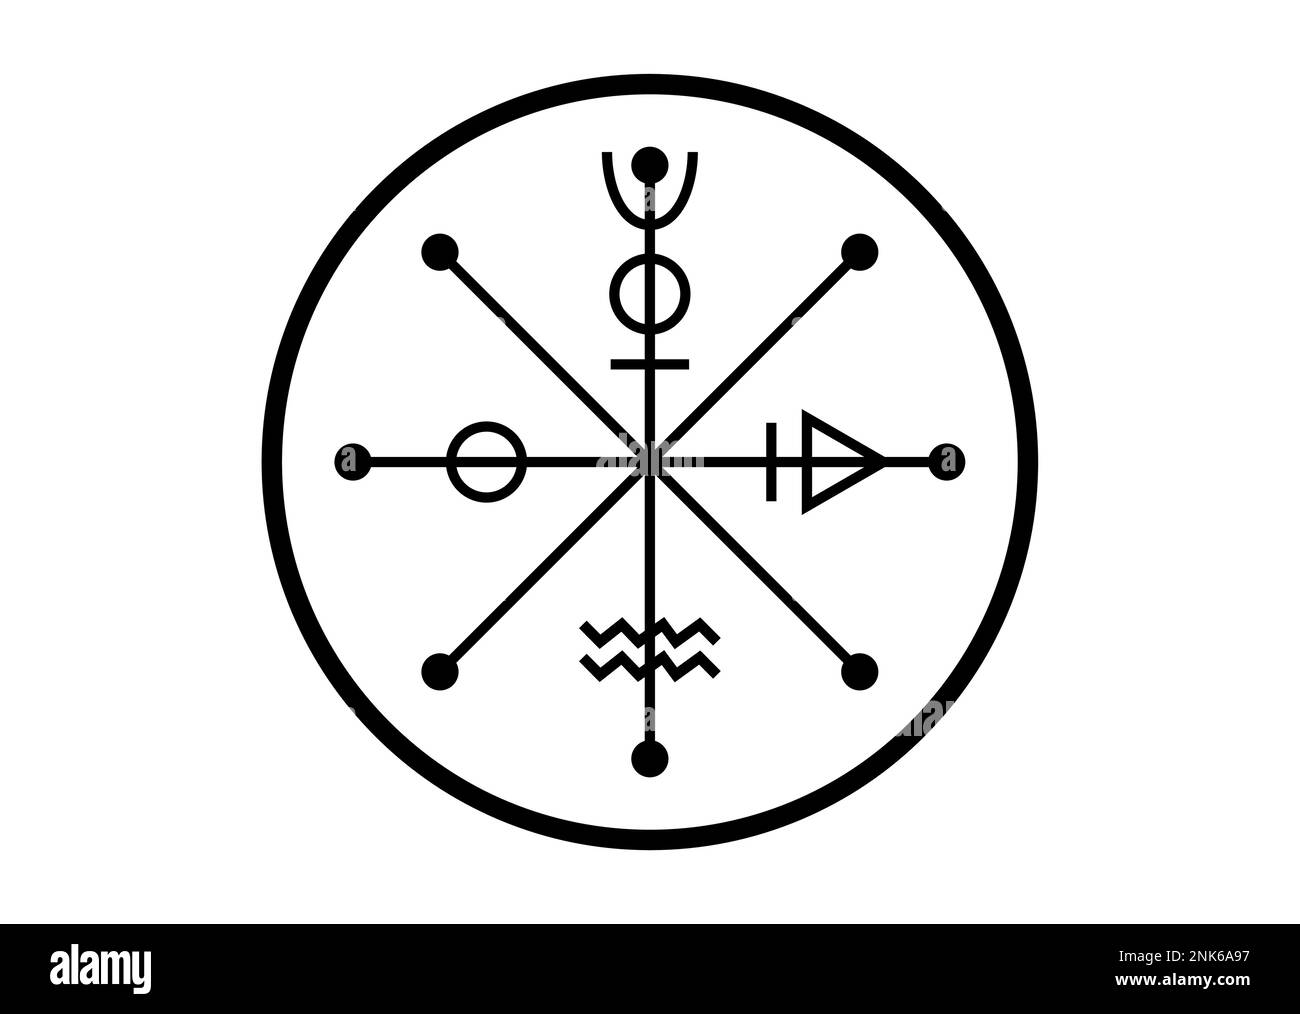 La ruota di Fotune tarocco simbolo, segno antico mondiale, il ciclo di vita, magico talismano strega fascino fortunato, tatuaggio nero icona della geometria sacra Illustrazione Vettoriale